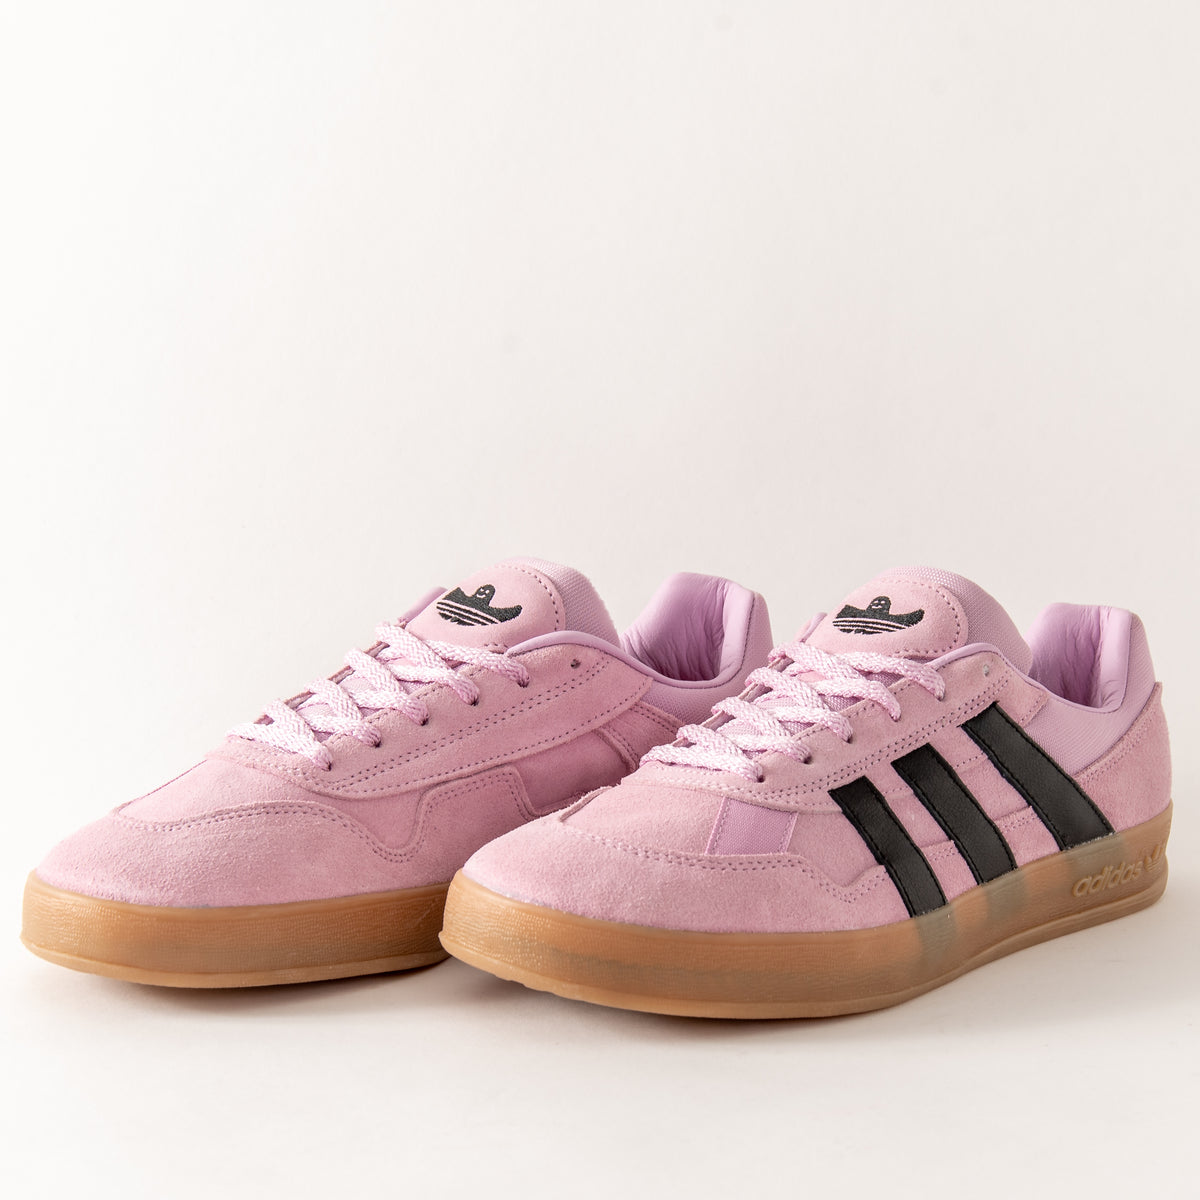 Adidas - (Pink/Black) –